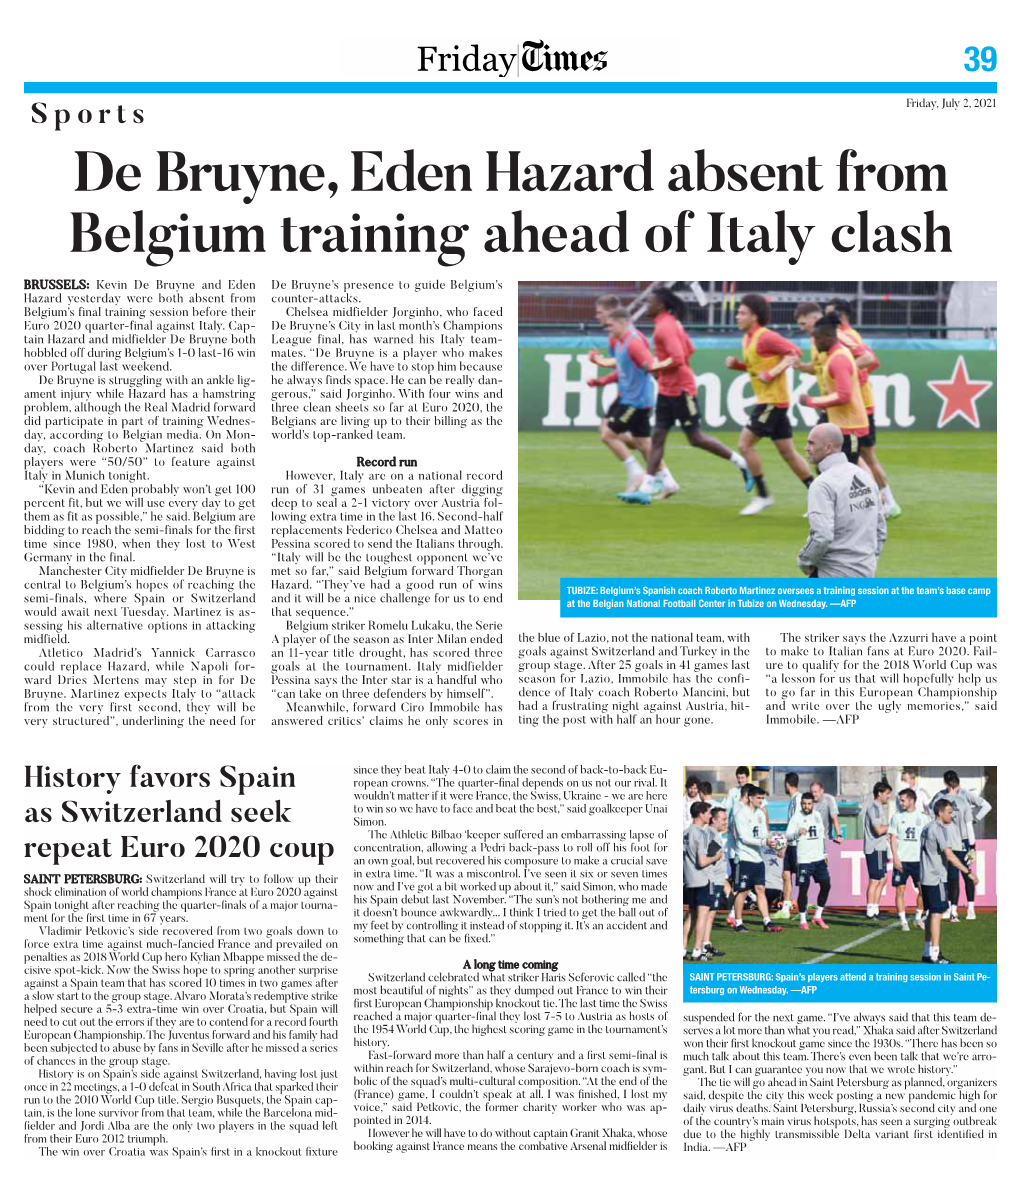 De Bruyne, Eden Hazard Absent from Belgium Training Ahead of Italy Clash